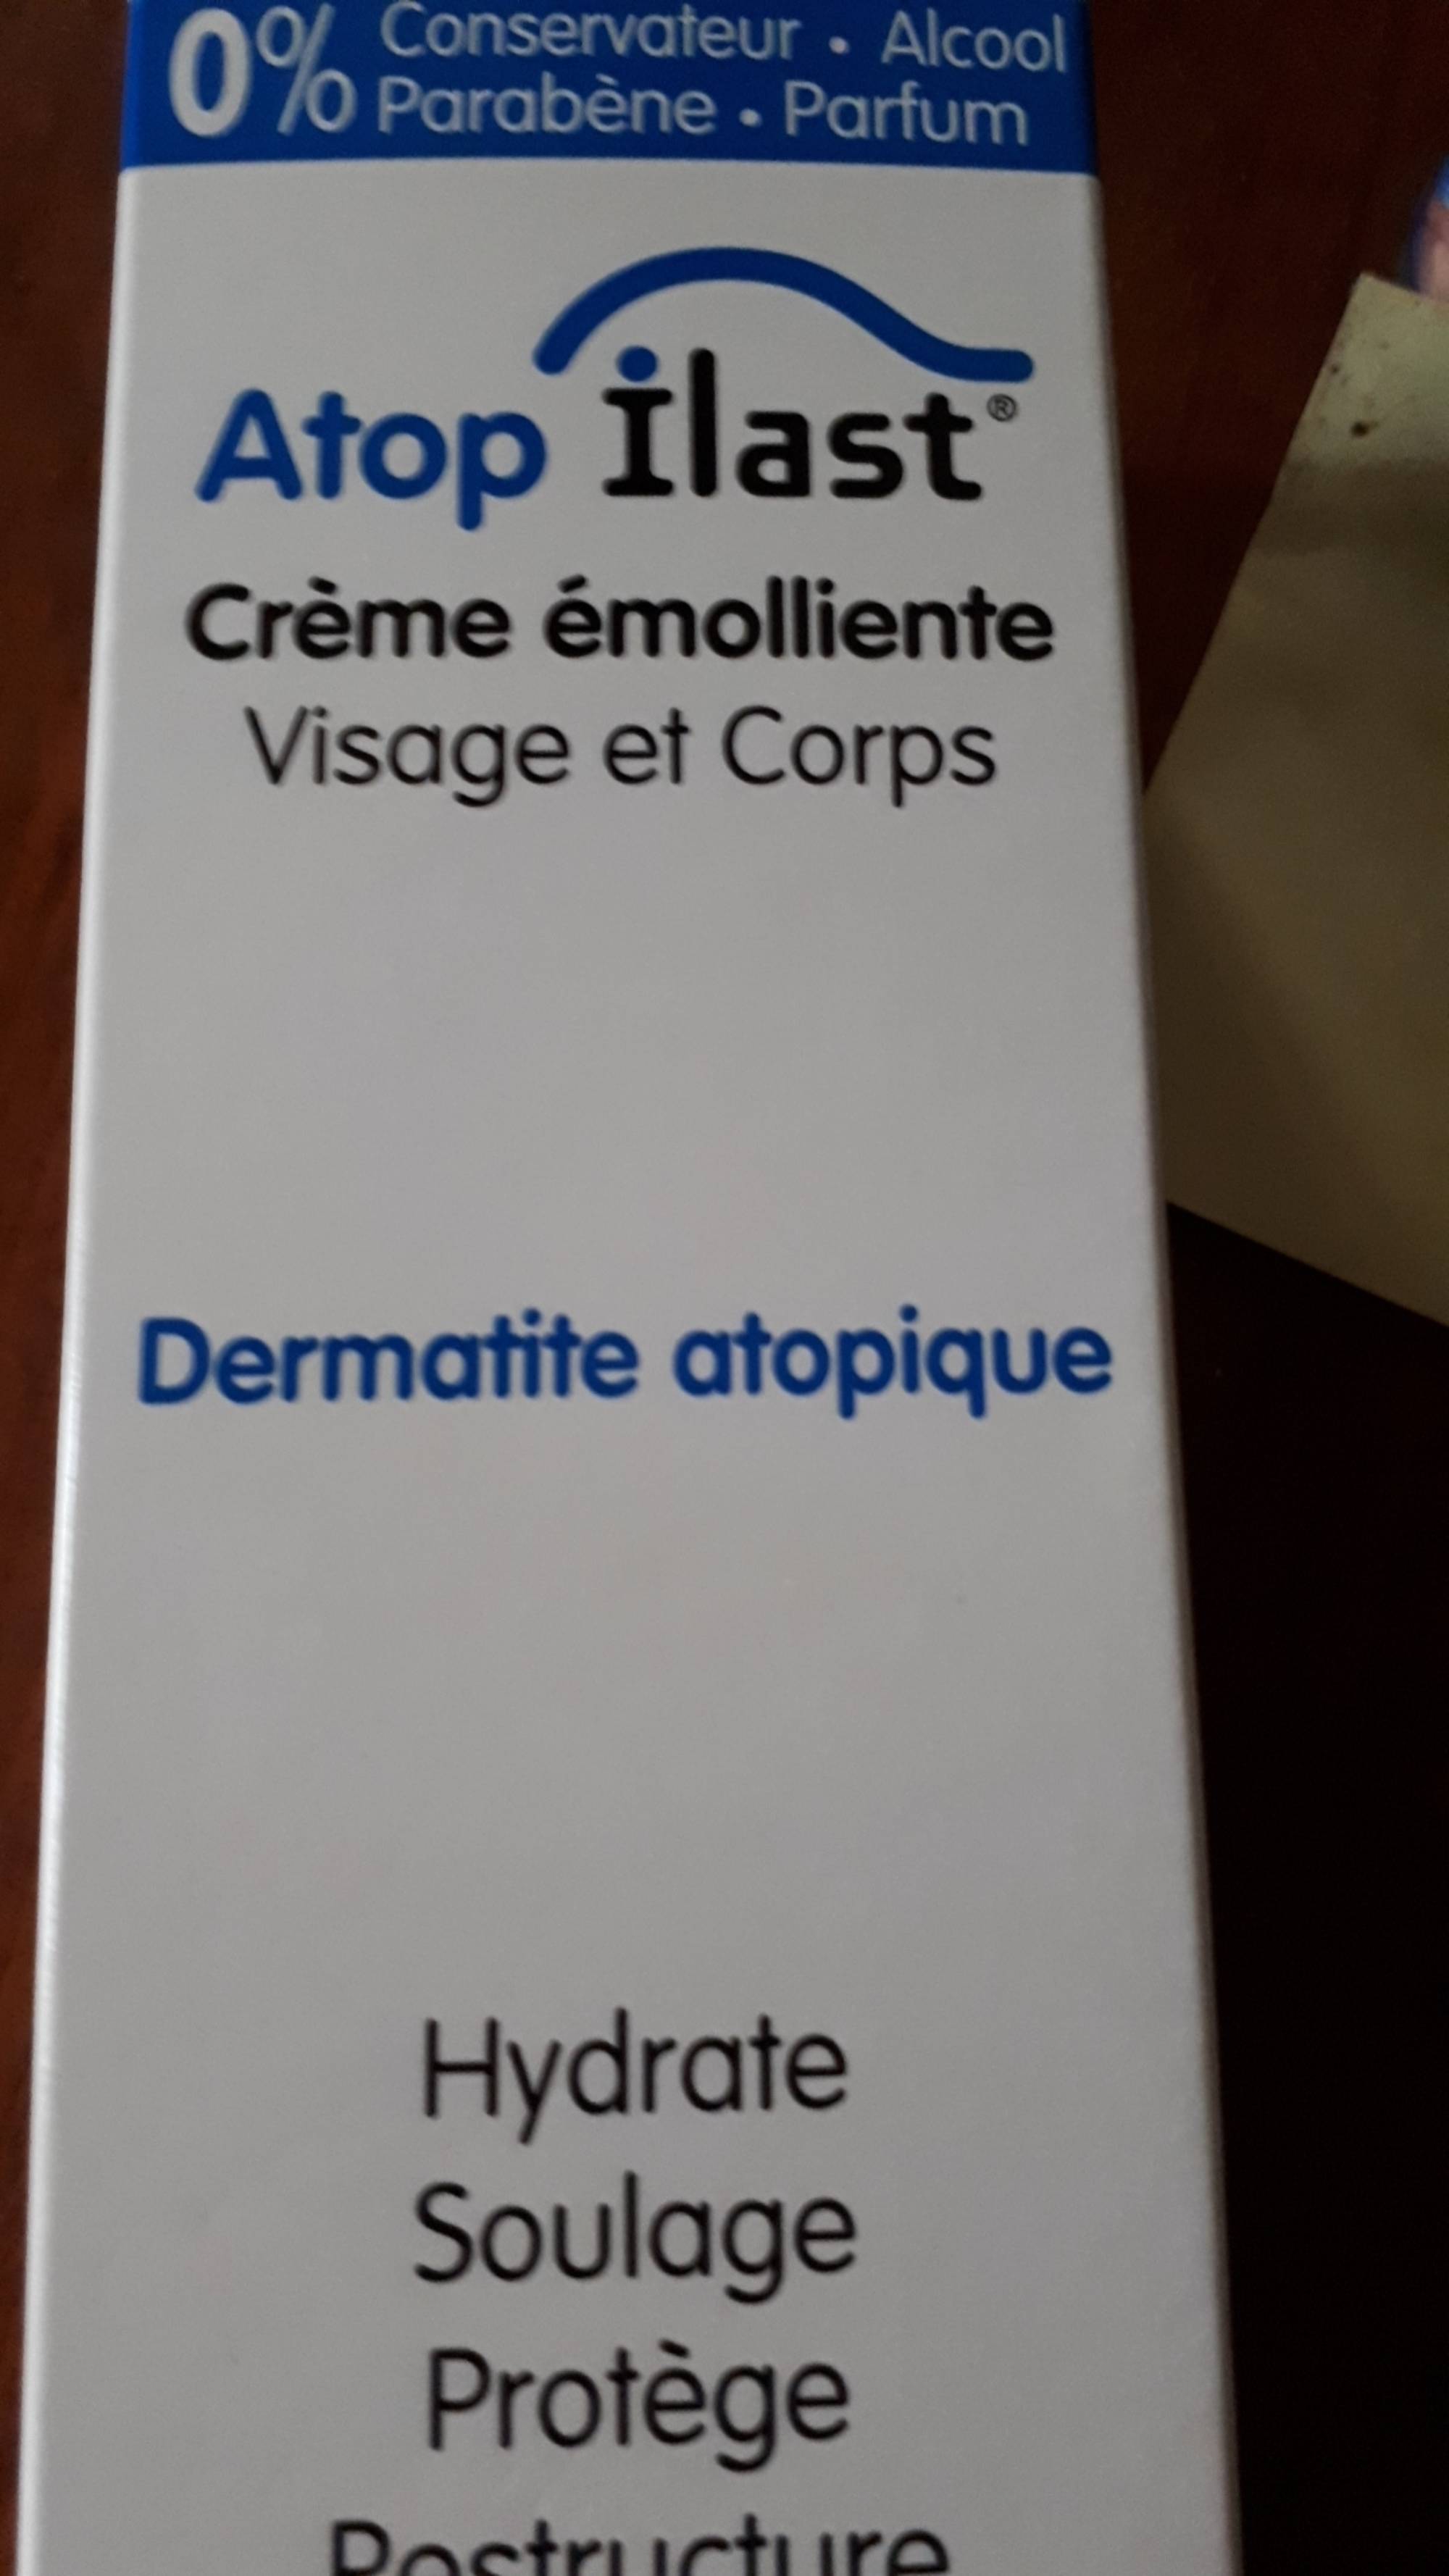 ATOP ILAST - Dermatite atopique - Crème émolliente